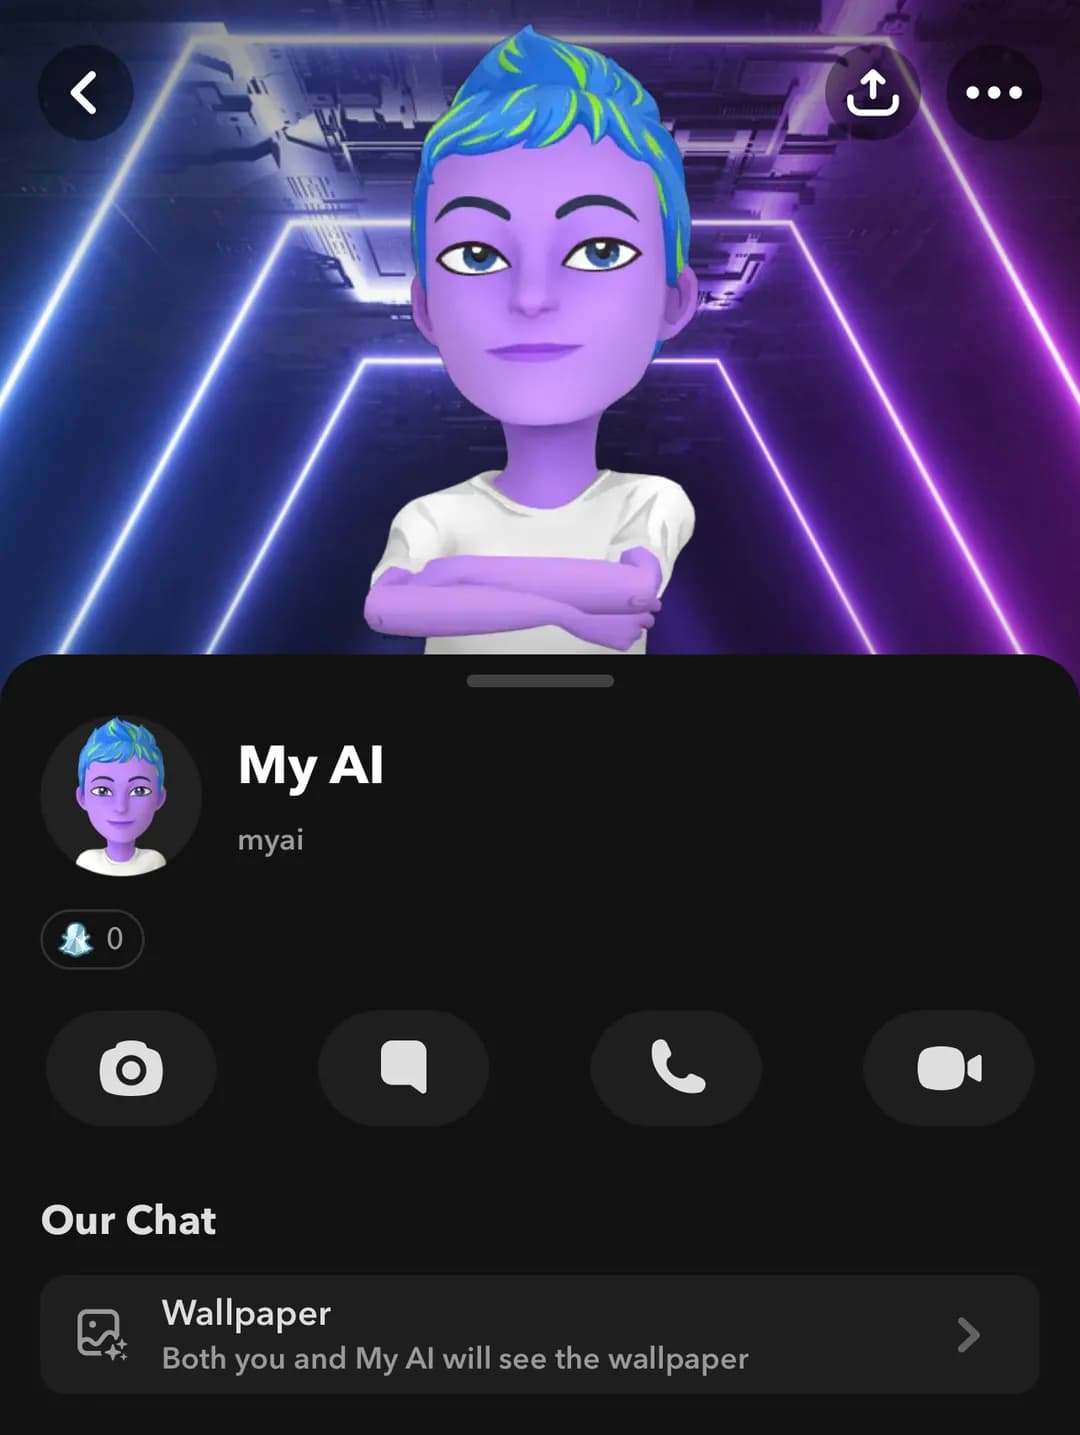 Snapchat My AI Chatbot